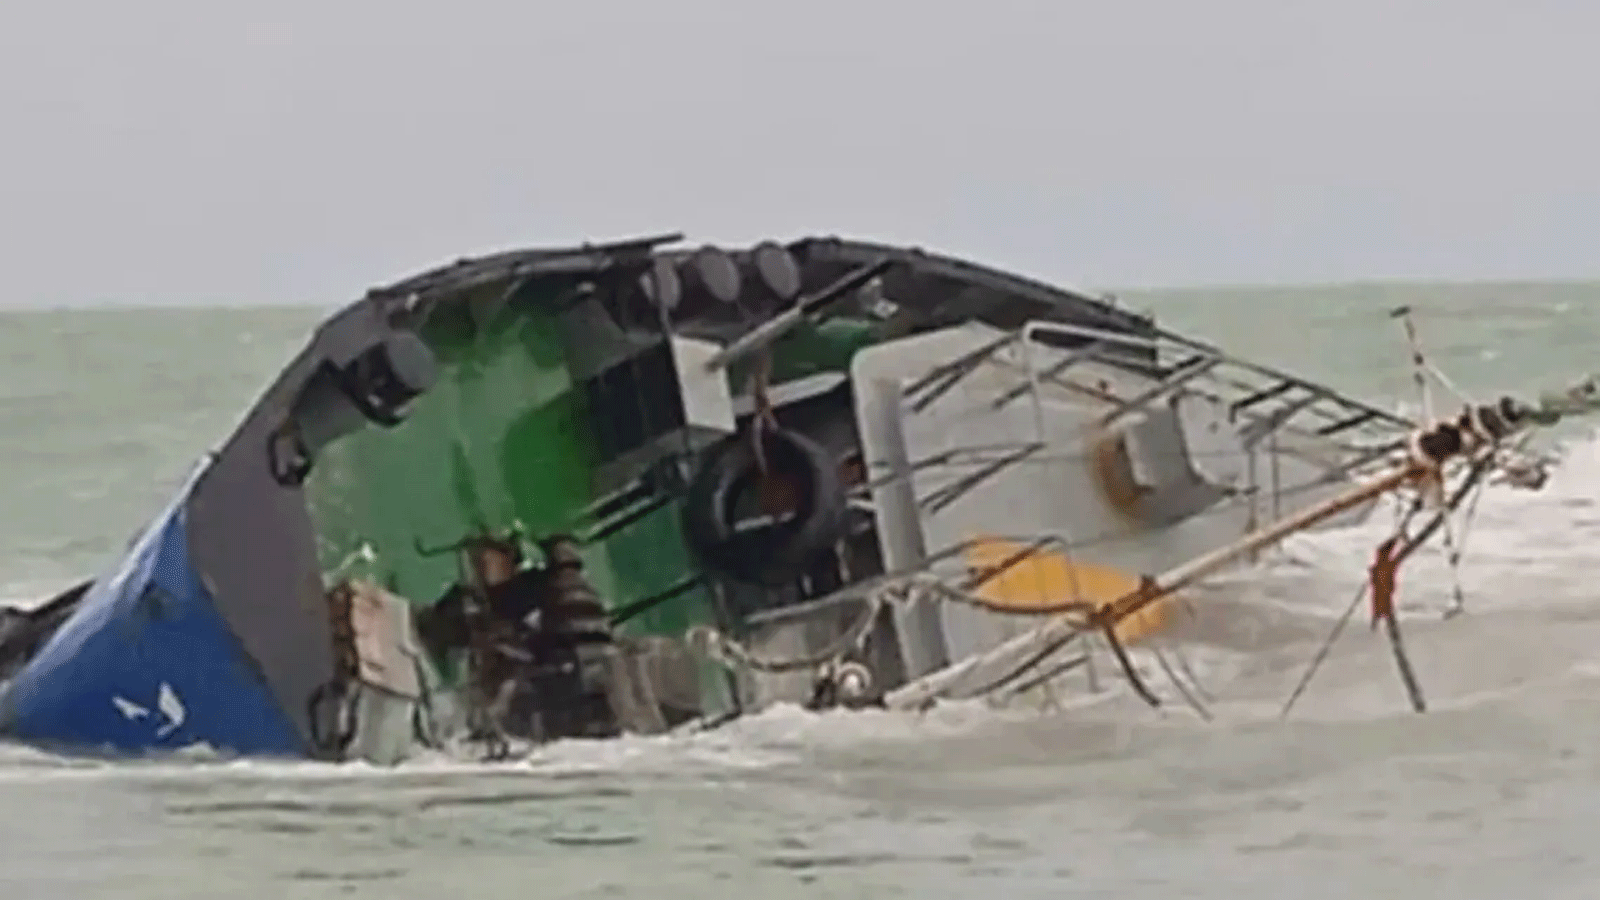 أصدر طاقم السفينة Xelo نداء استغاثة ولجأ إلى المياه التونسية من سوء الأحوال الجوية قبل غرق السفينة